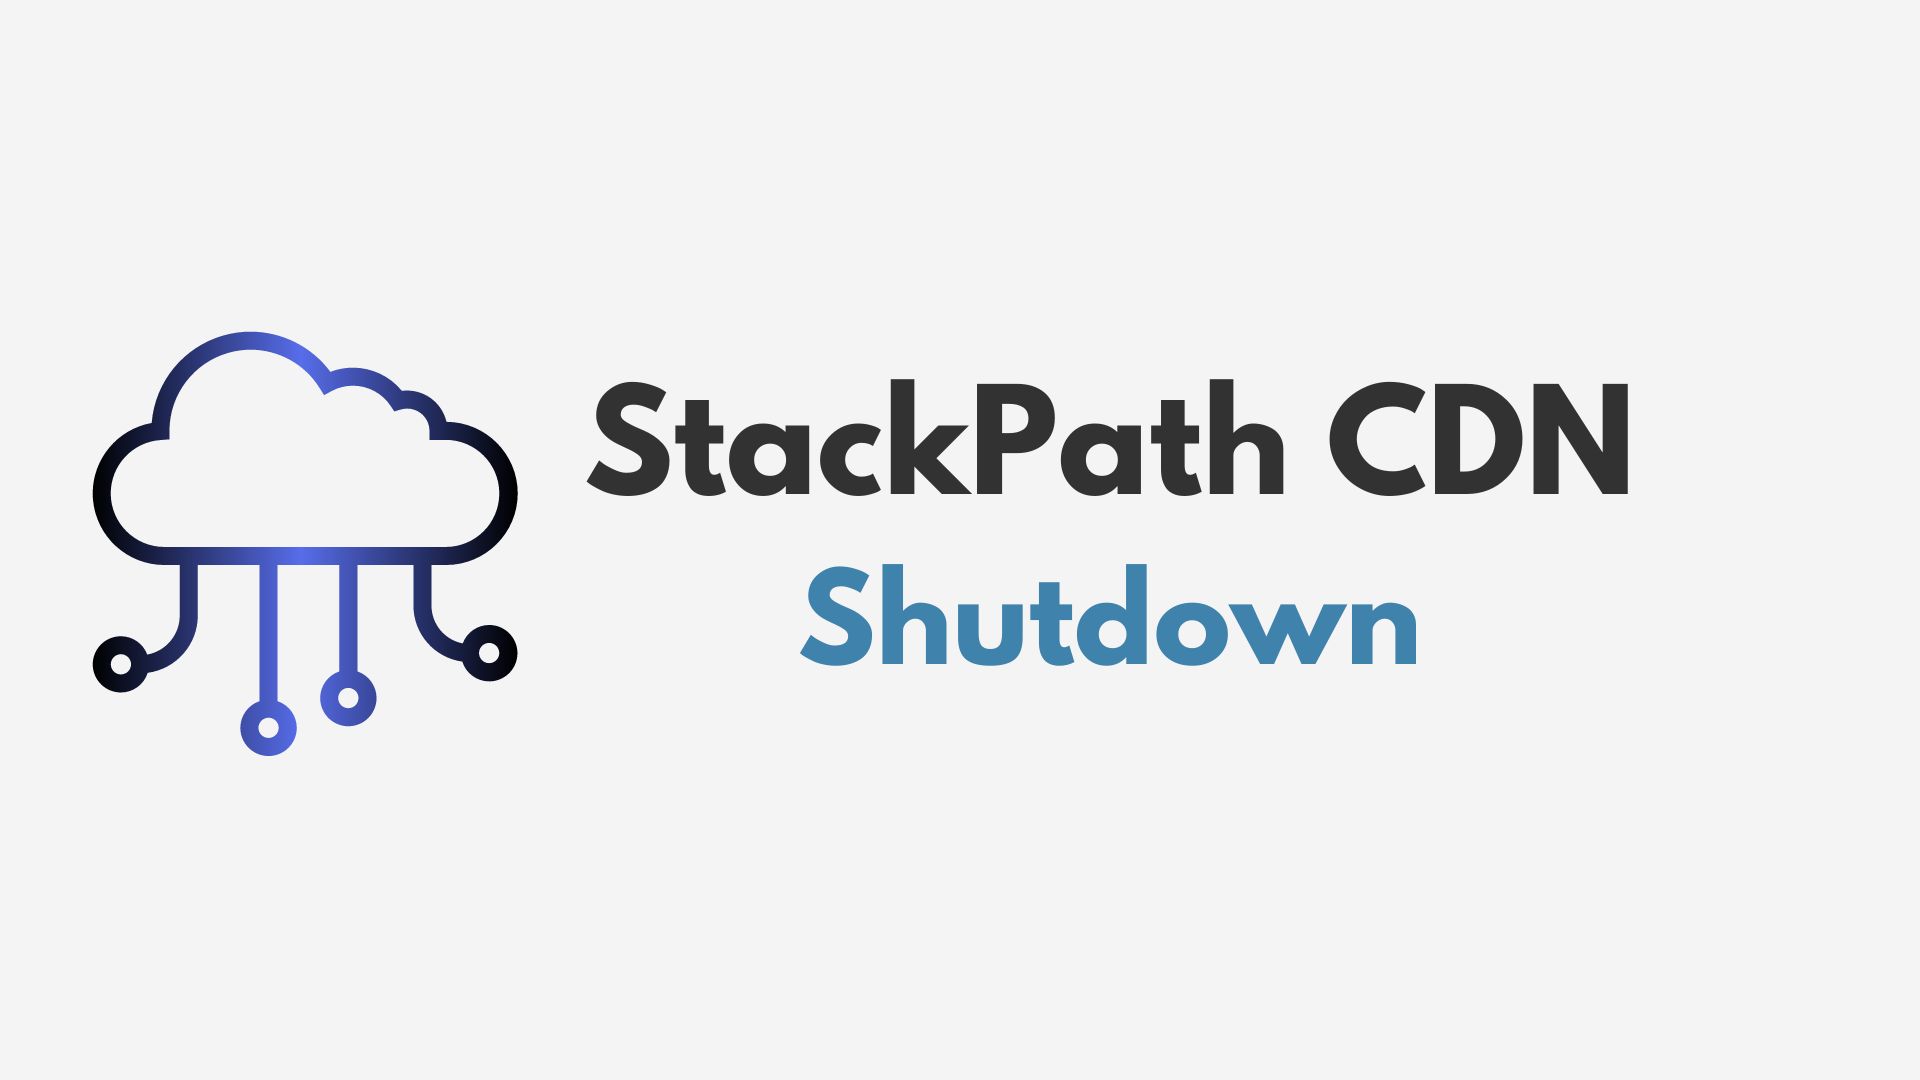 StackPath CDN shutdown